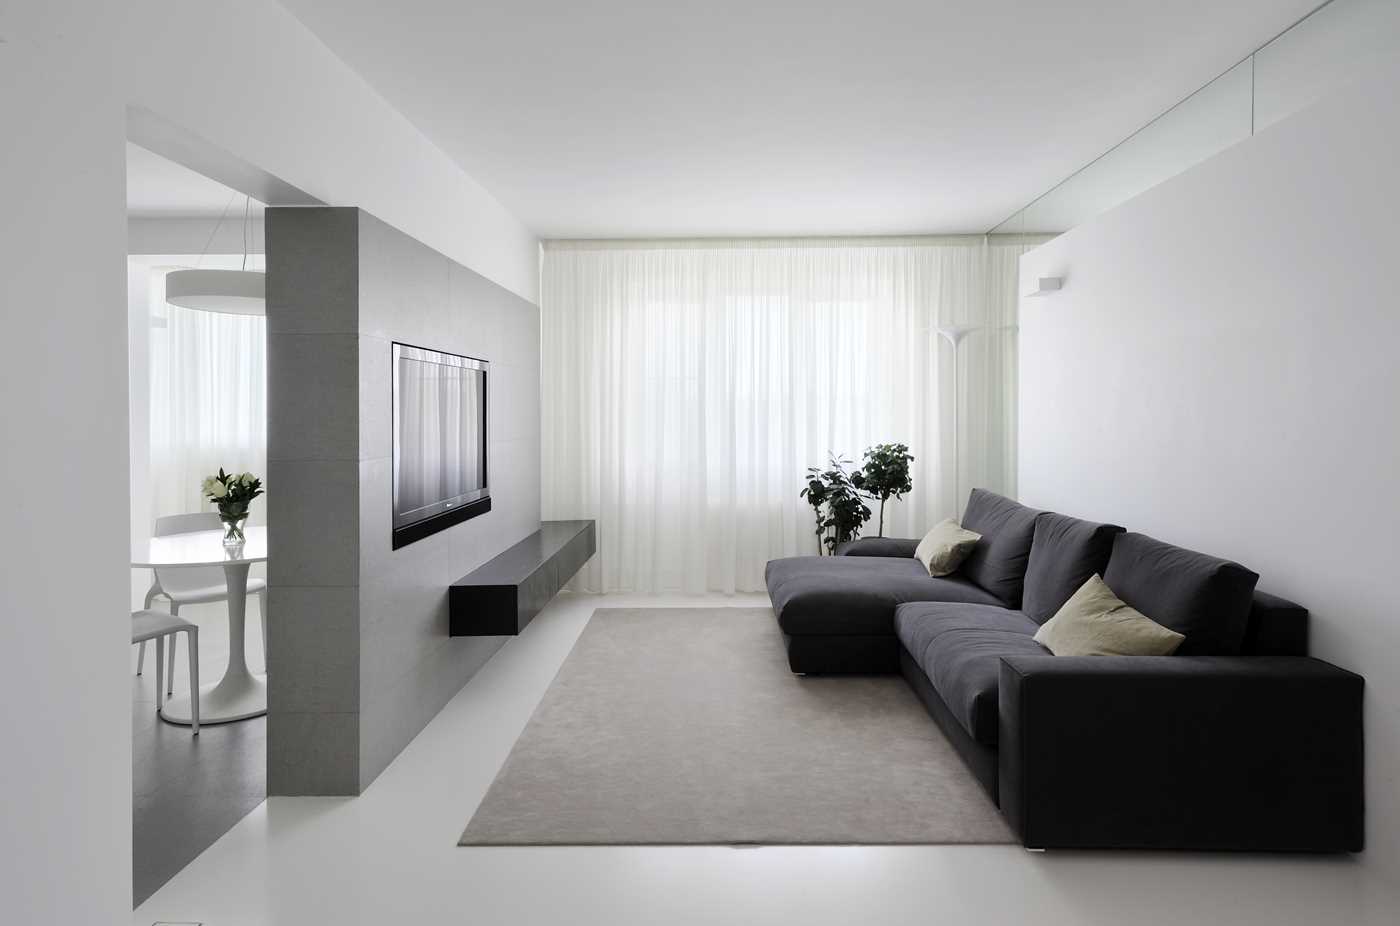 version du design lumineux du salon dans le style du minimalisme